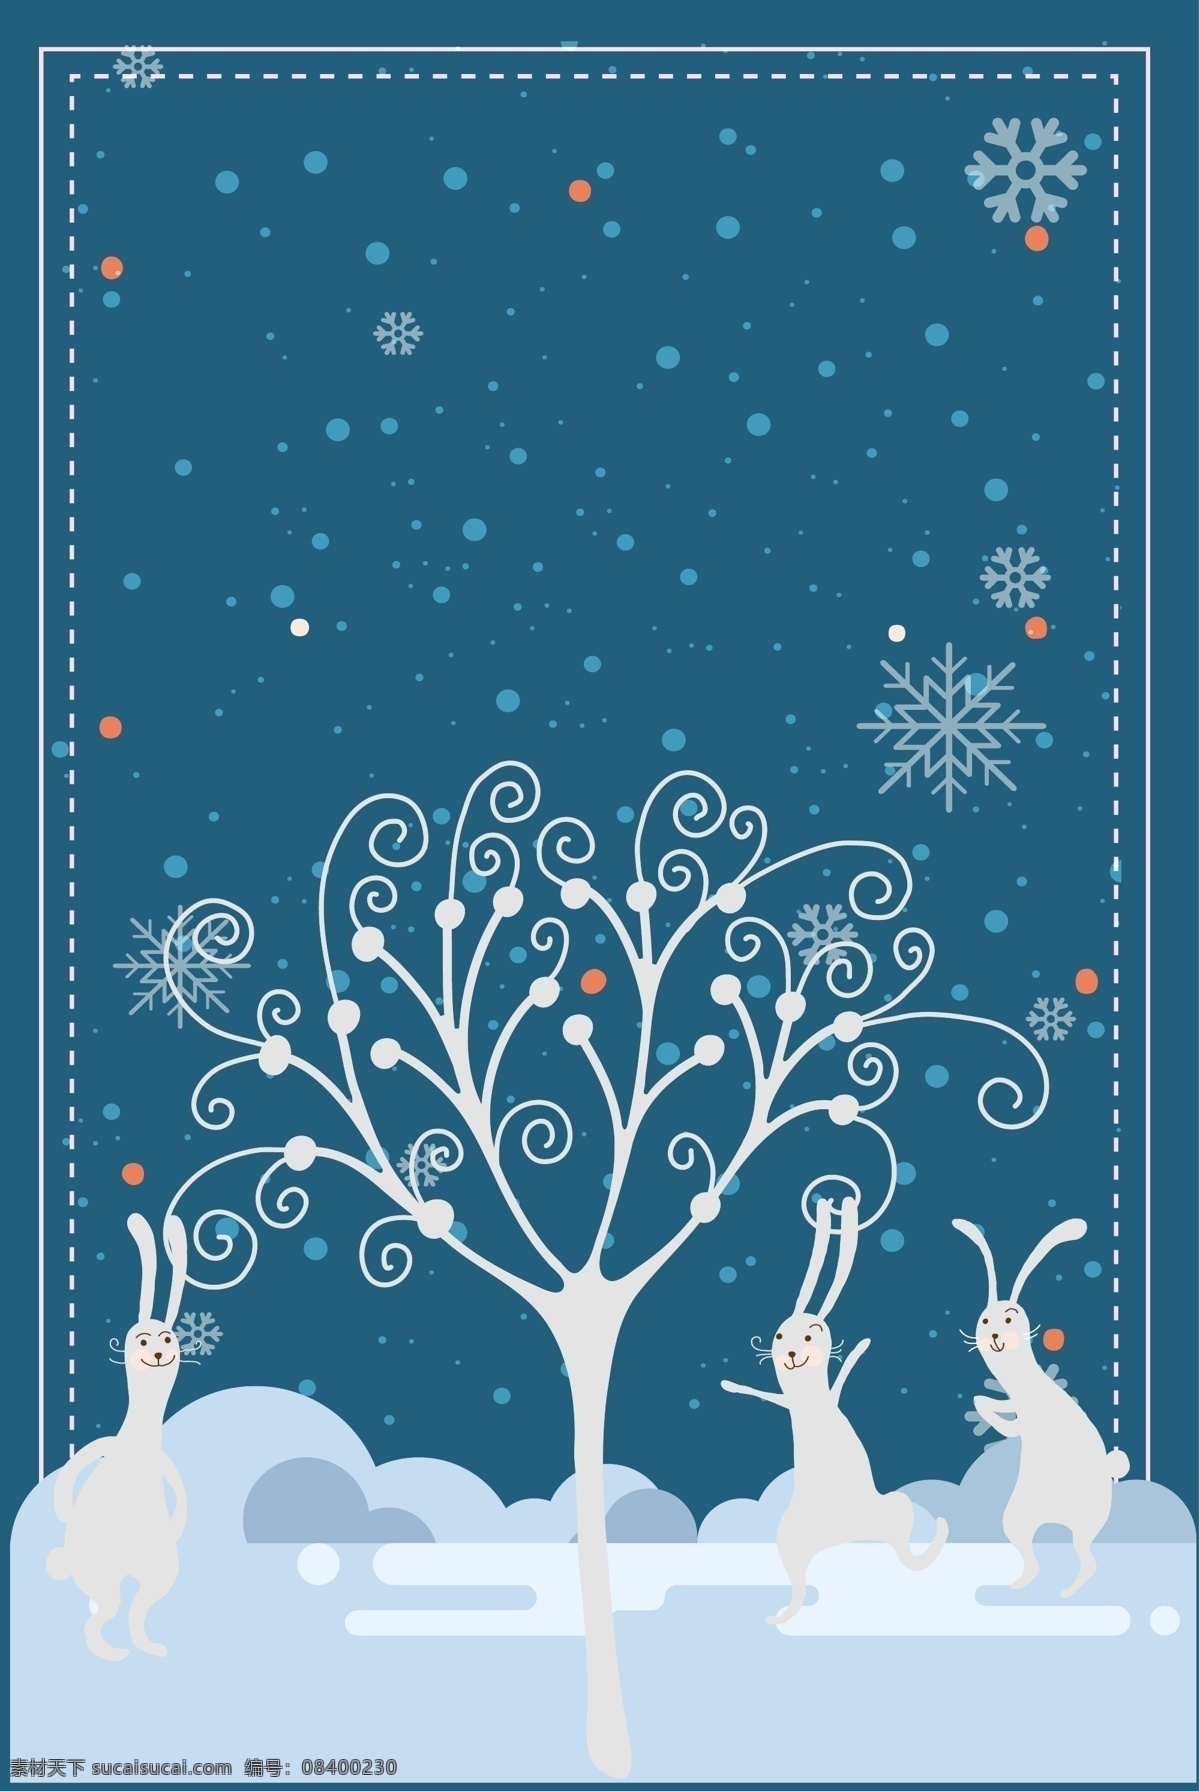 创意 清新 风 圣诞节 展板 背景 手绘背景 圣诞快乐 水彩背景 平安夜 树木 圣诞节促销 冬至